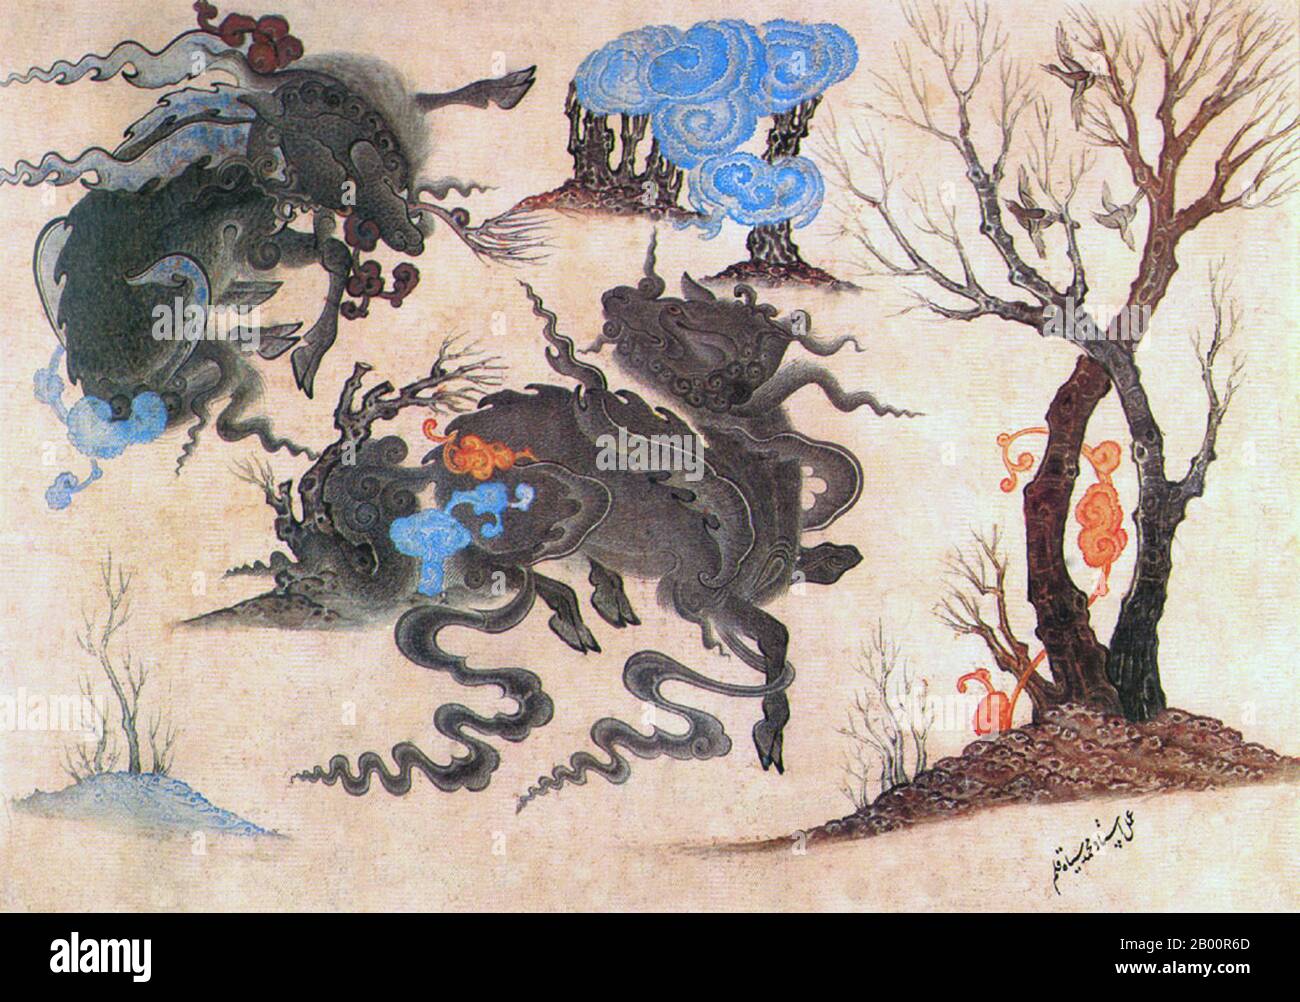 Asie centrale : école Siyah Kalem, XVe siècle : combat entre deux créatures mythiques. Siyah Kalem ou 'Black Pen' est le nom donné à l'école de peinture du XVe siècle attribuée à Mehmed Siyah Kalem. Rien n’est connu de sa vie, mais son travail indique qu’il était d’origine turque en Asie centrale et qu’il connaissait parfaitement la vie militaire et de camp. Les tableaux apparaissent dans les albums du Conquérant, ainsi nommés parce que deux portraits du Sultan Mehmed II le Conquérant sont présents dans l'un d'eux. Les albums sont composés de miniatures de manuscrits des XIVe, XVe et du début du XVIe siècle. Banque D'Images